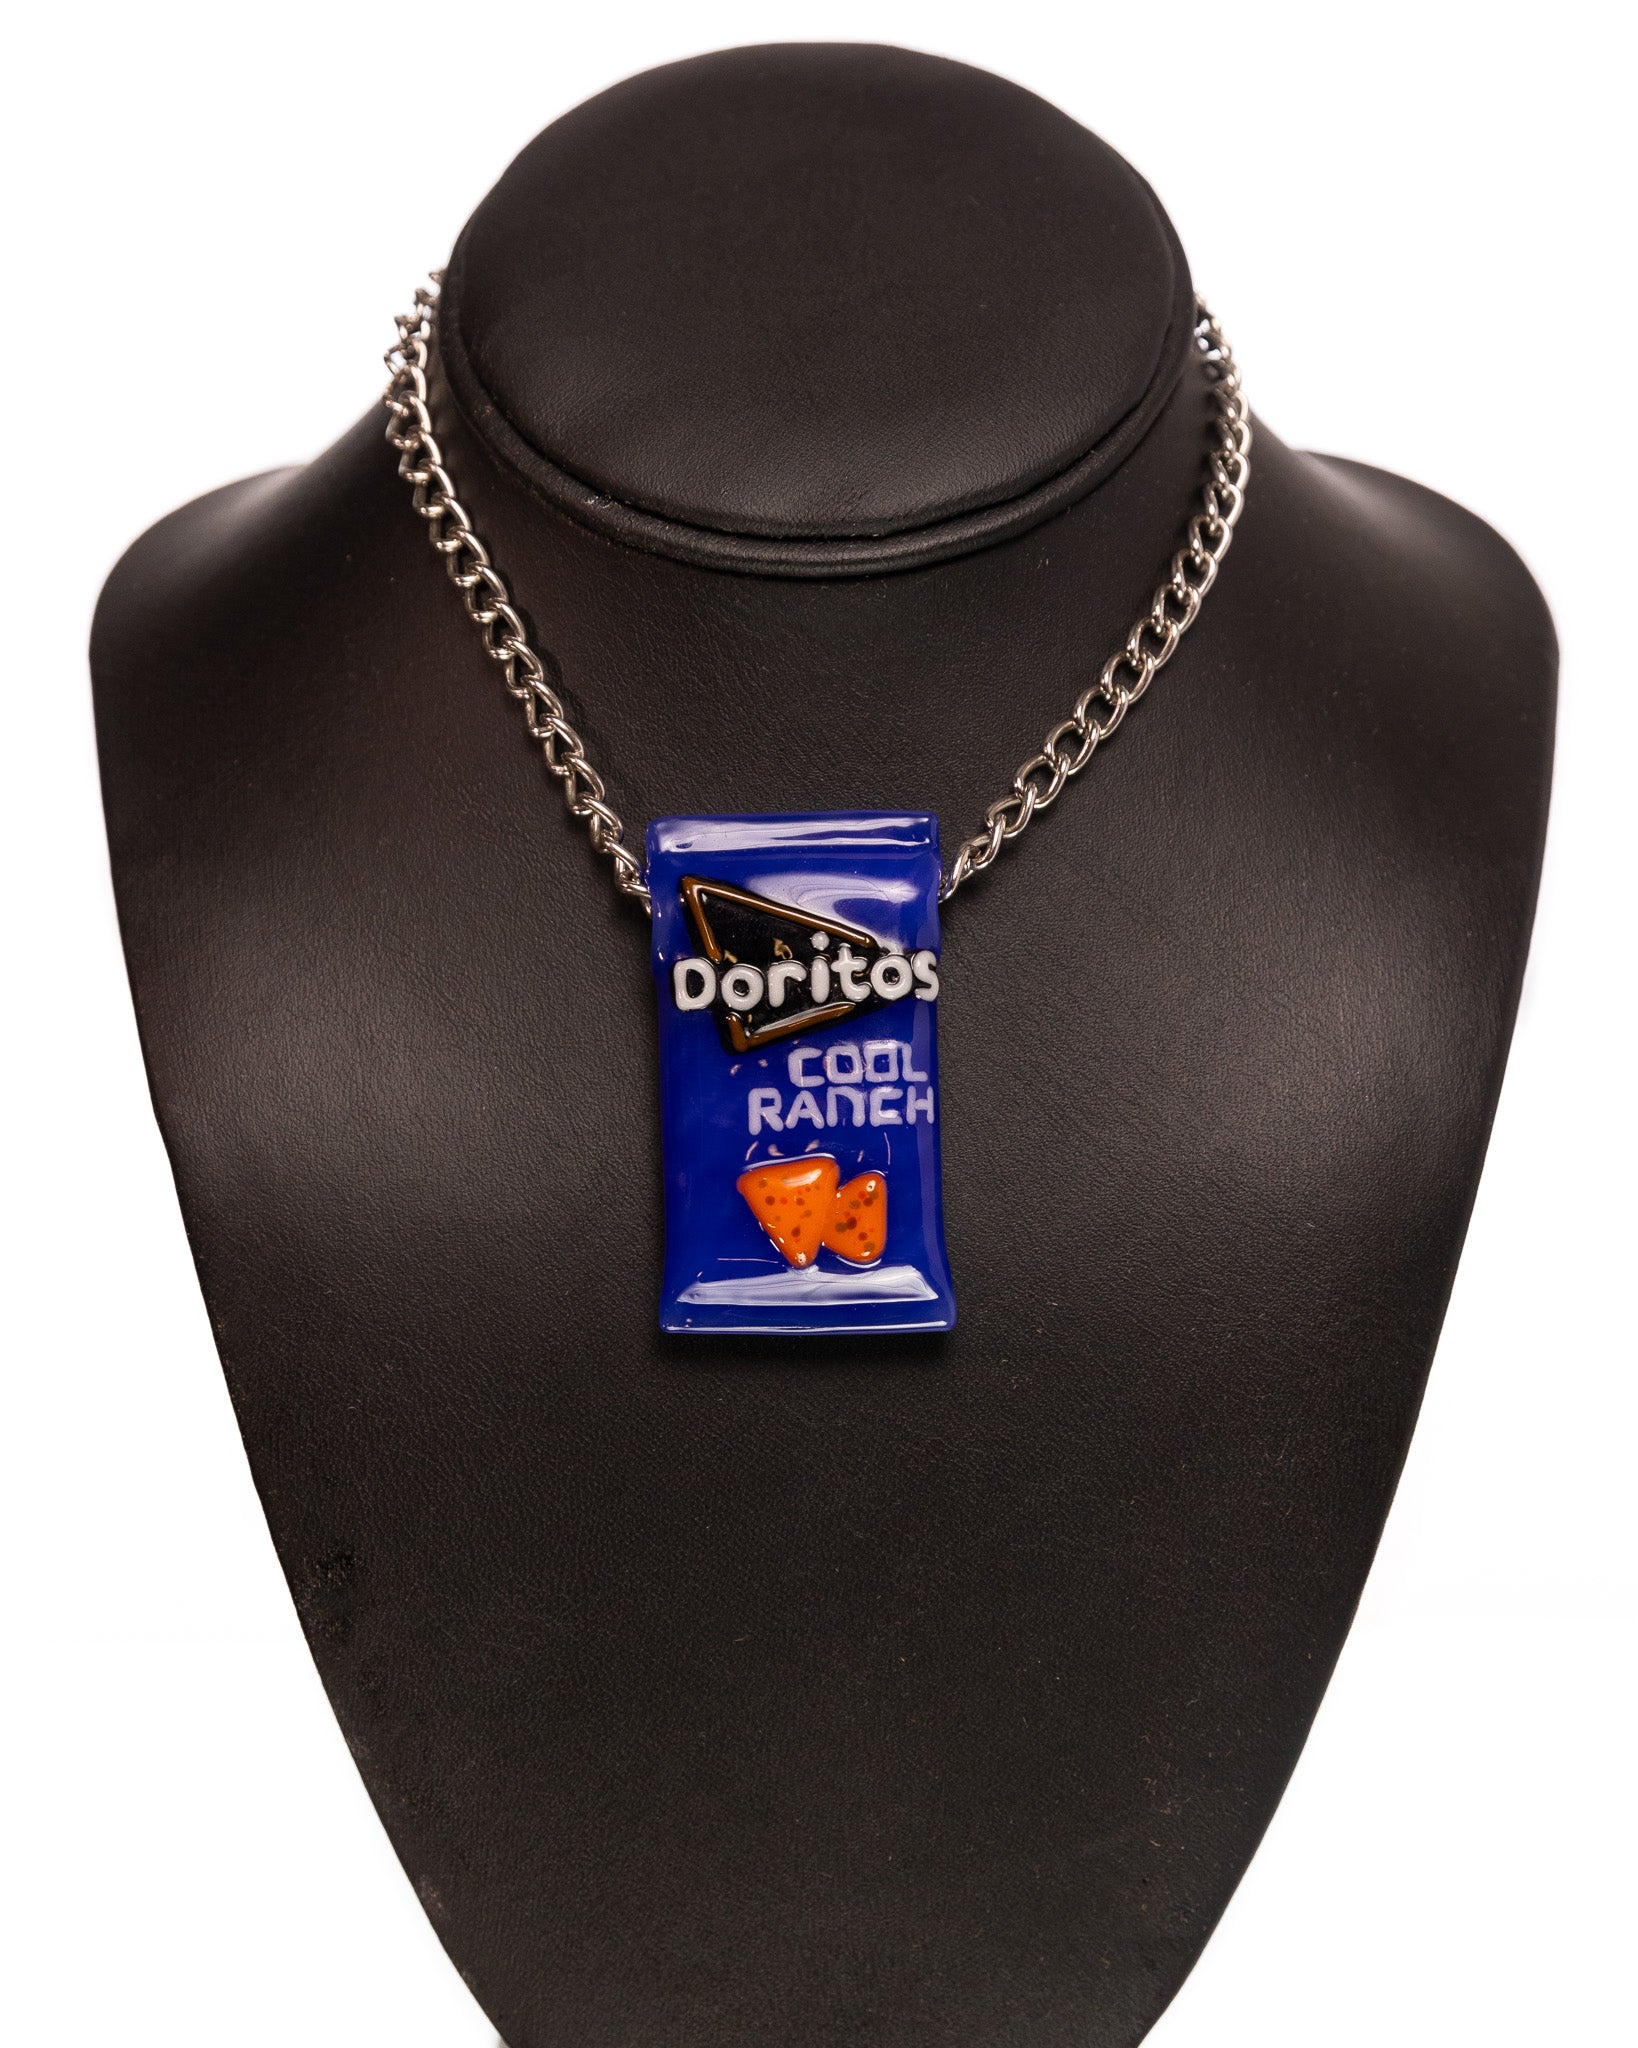 Heretic Glass - Blue Doritos Bag Pendant